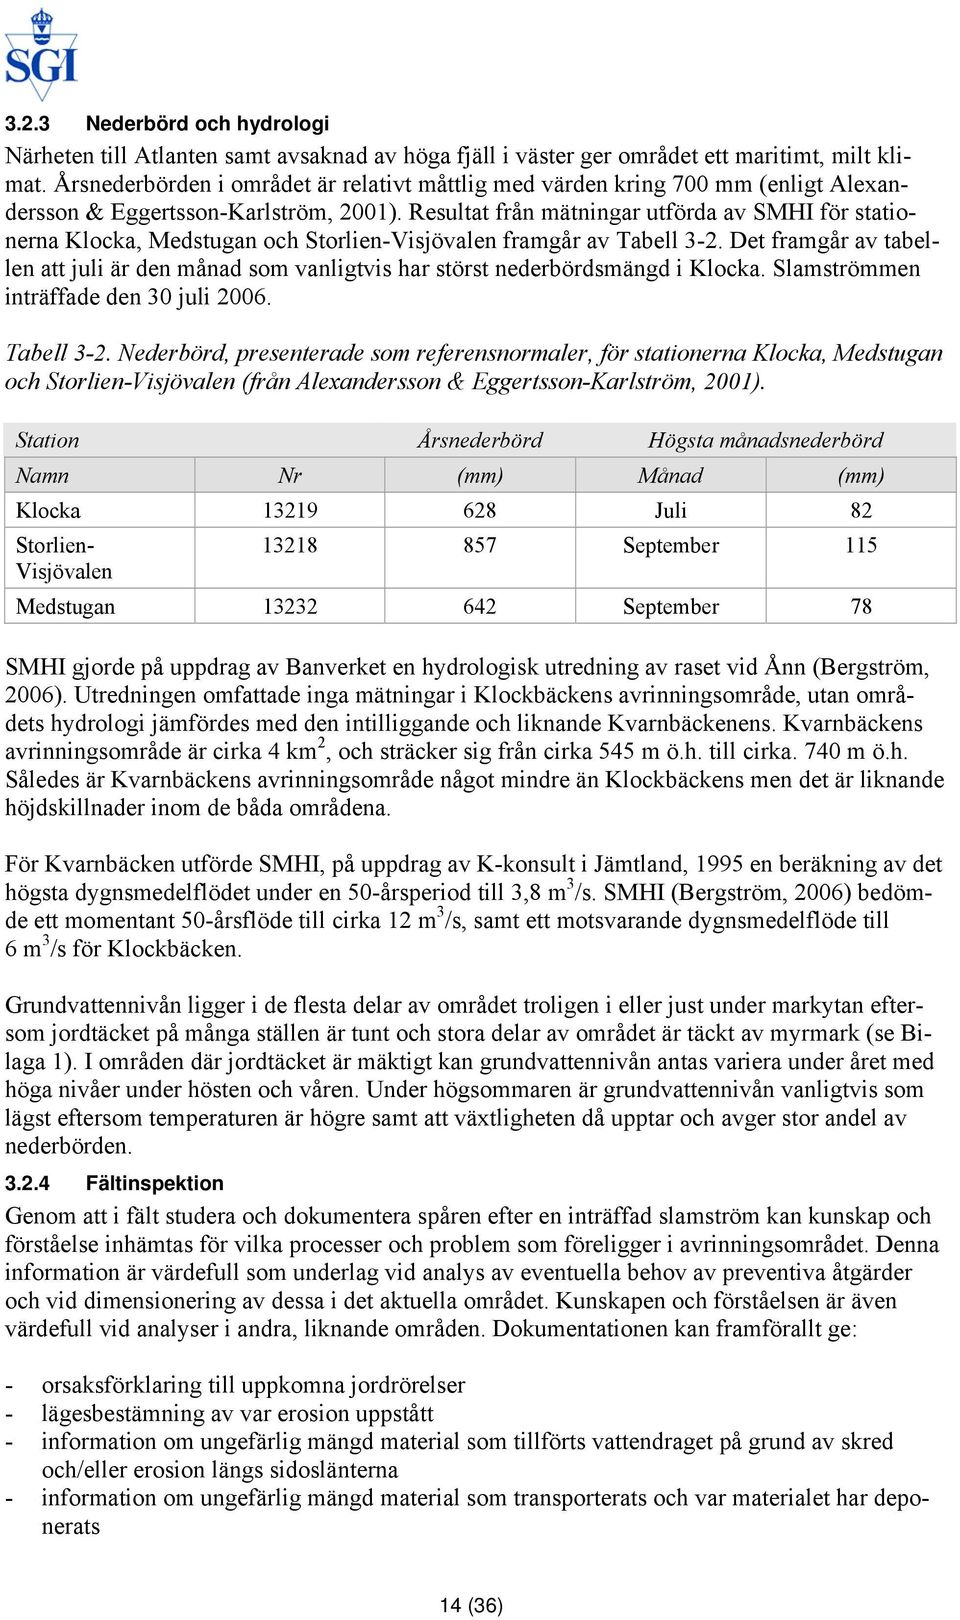 Resultat från mätningar utförda av SMHI för stationerna Klocka, Medstugan och Storlien-Visjövalen framgår av Tabell 3-2.